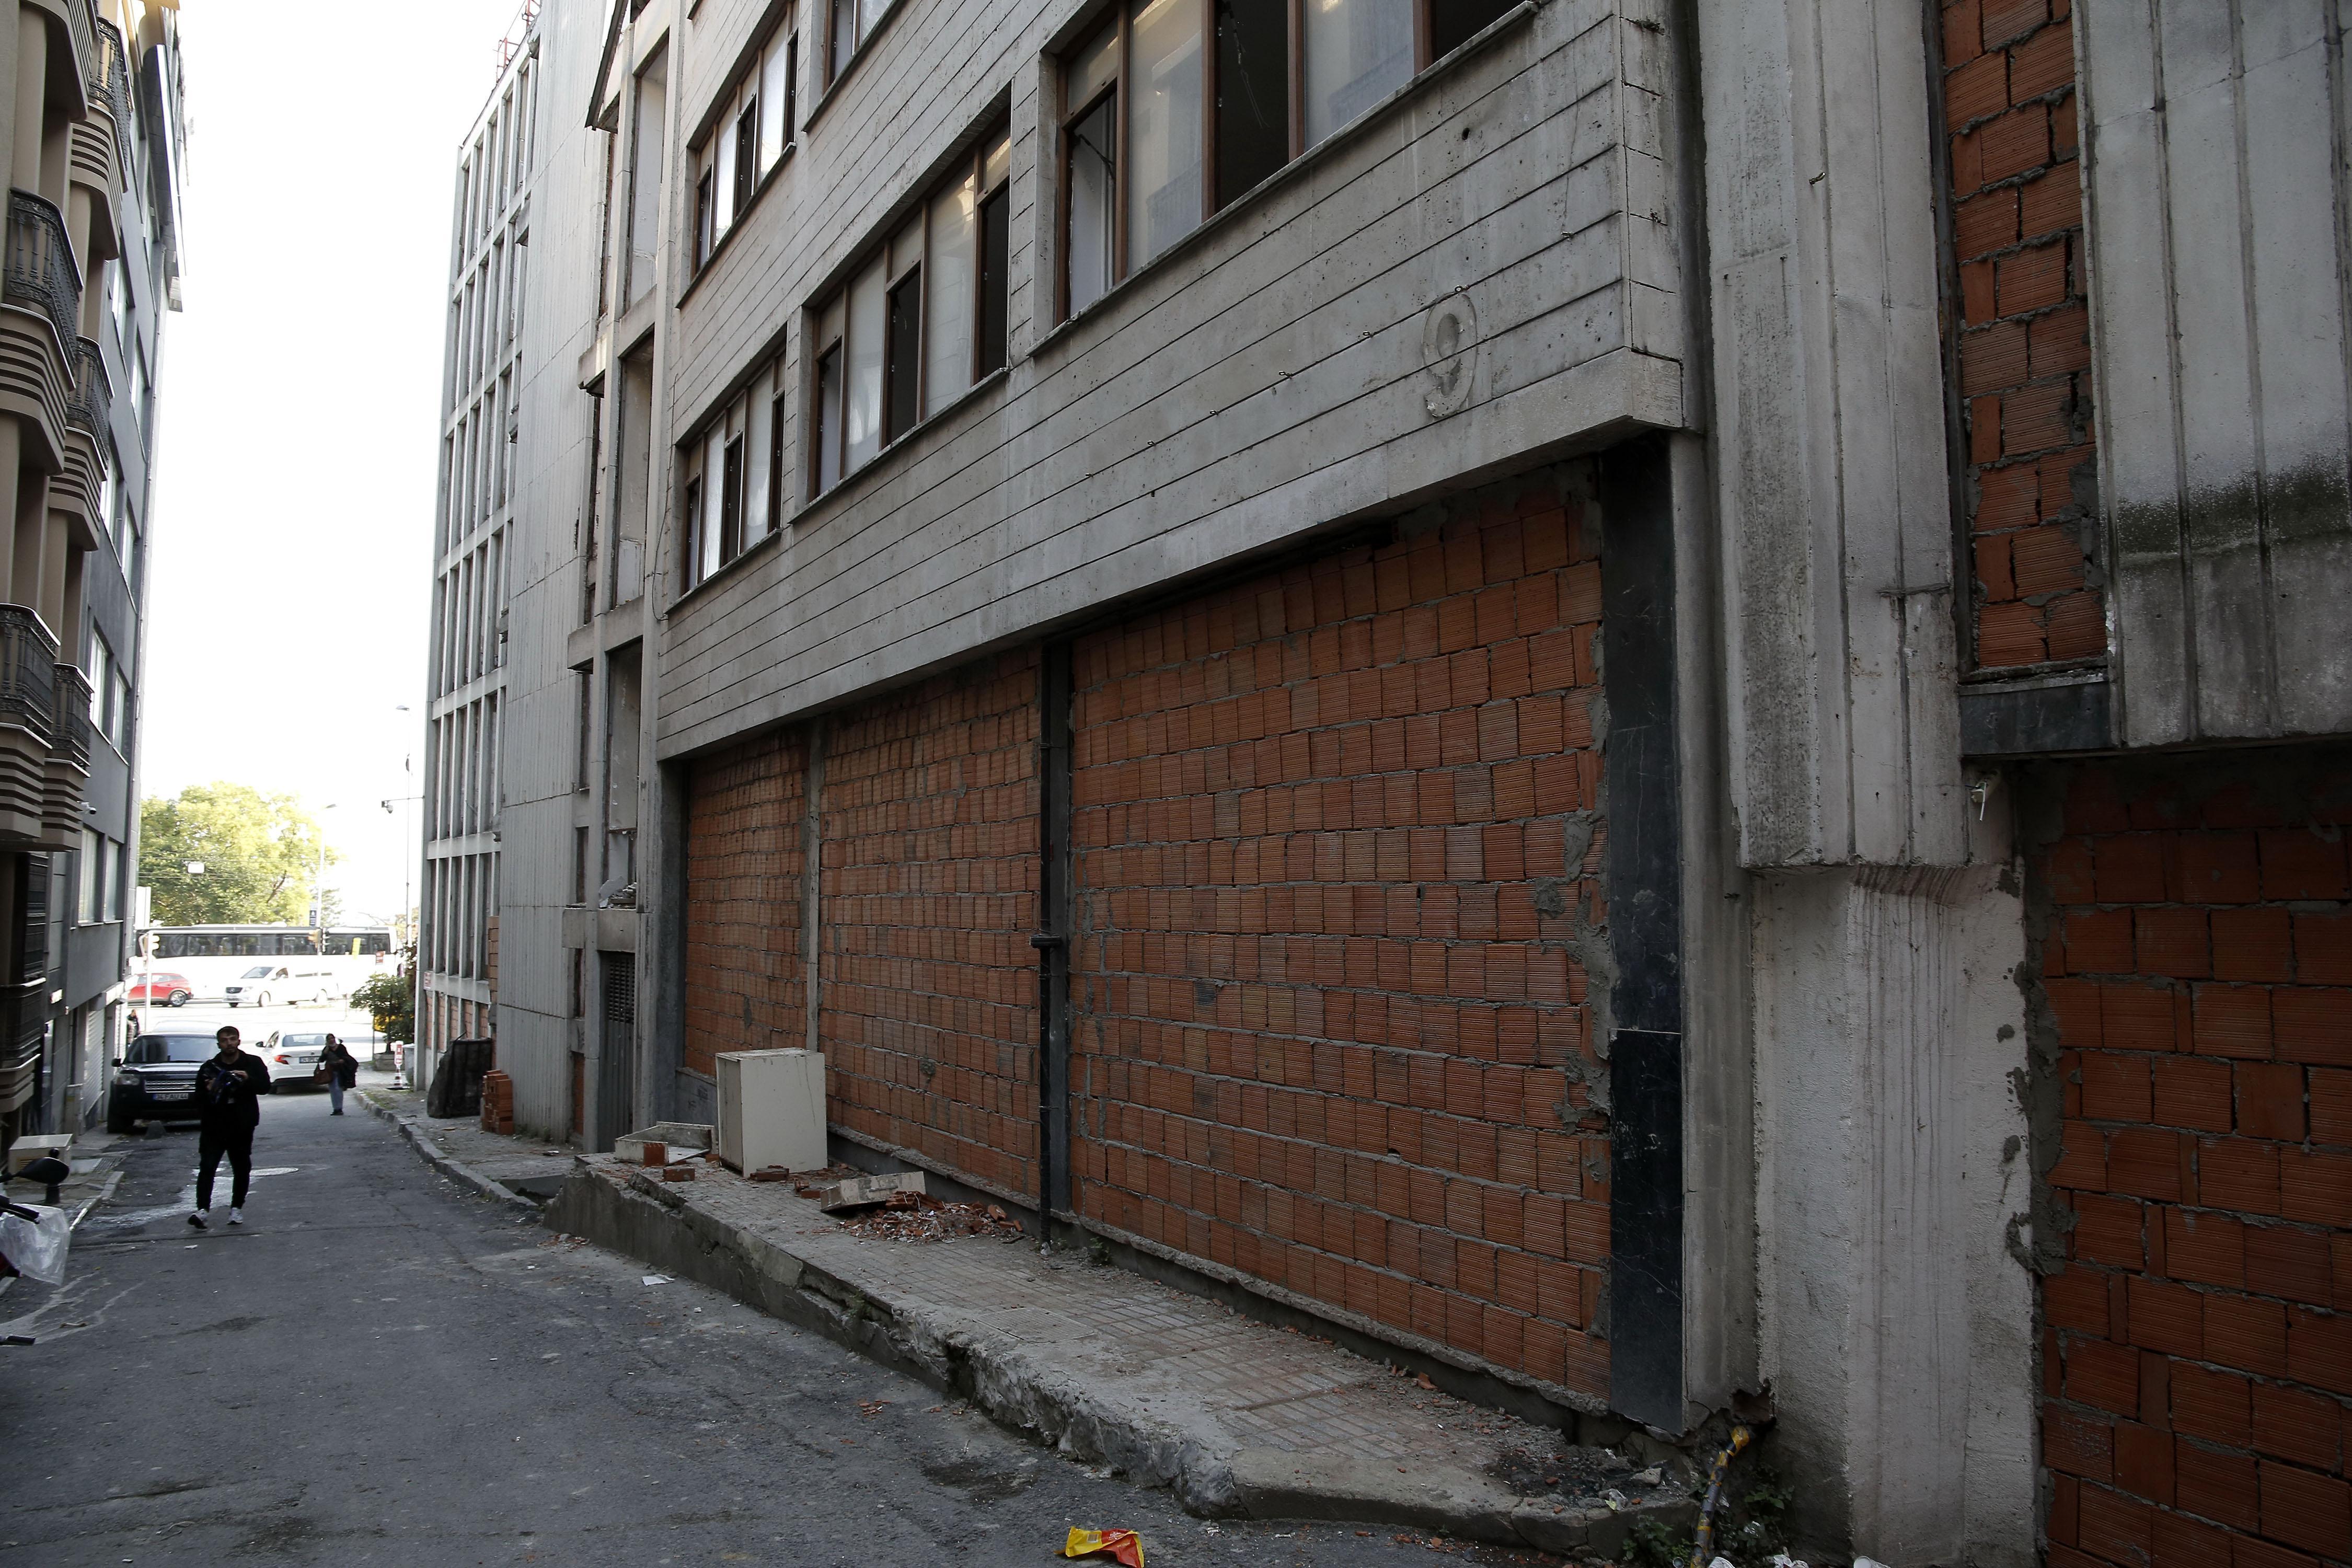 Hırsızların hedefi olan Reza Zarrabın eski holding binasına duvarlı önlem